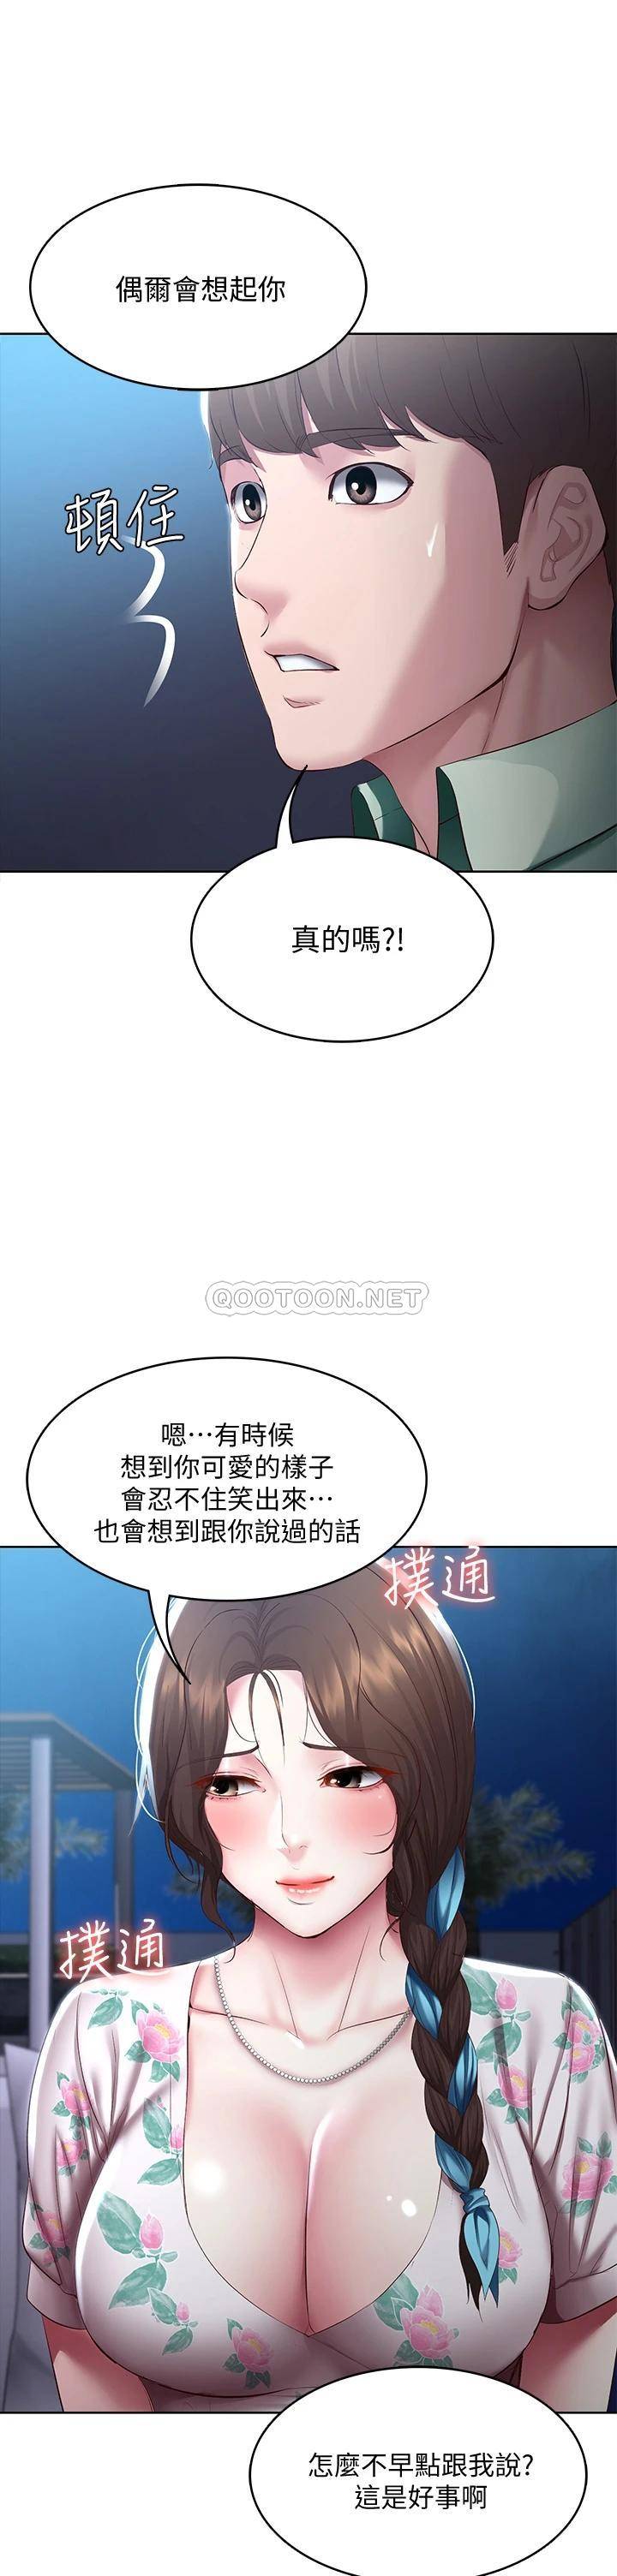 韩国污漫画 寄宿日記 第88话嫉妒女儿的美静 34